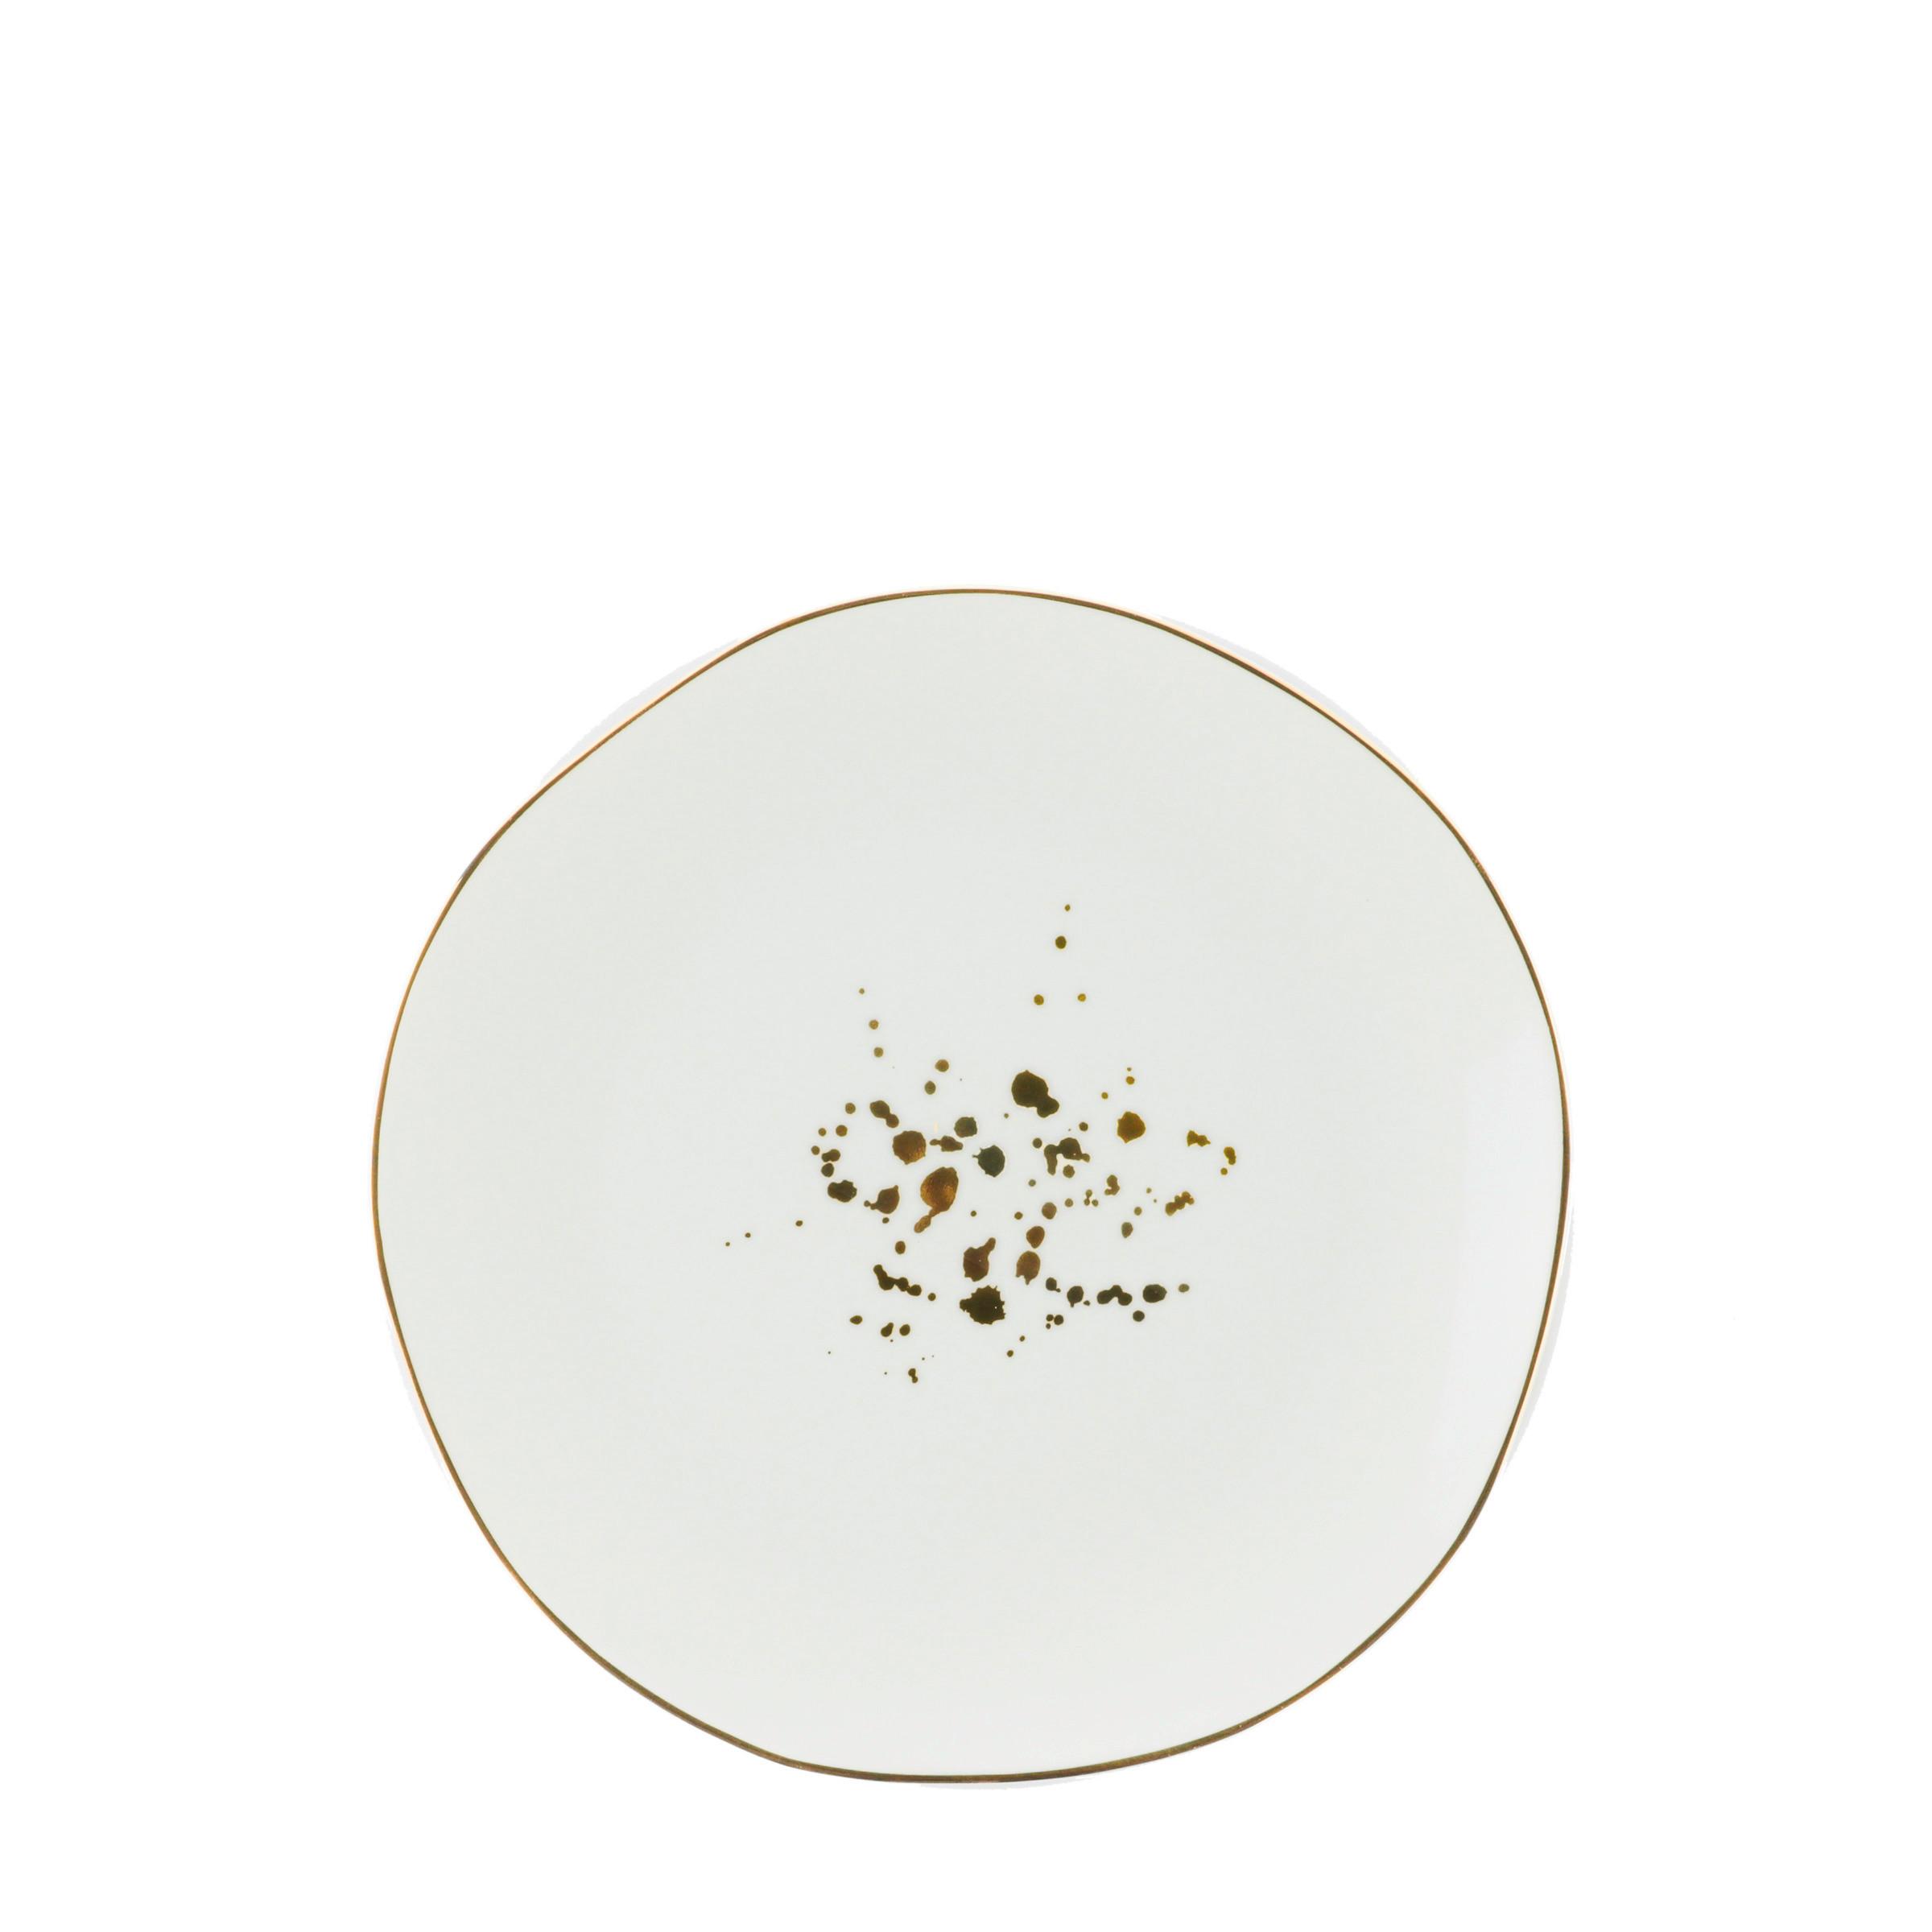 Desertni Krožnik Onix - zlate barve/bela, Moderno, keramika (20,5cm) - Premium Living